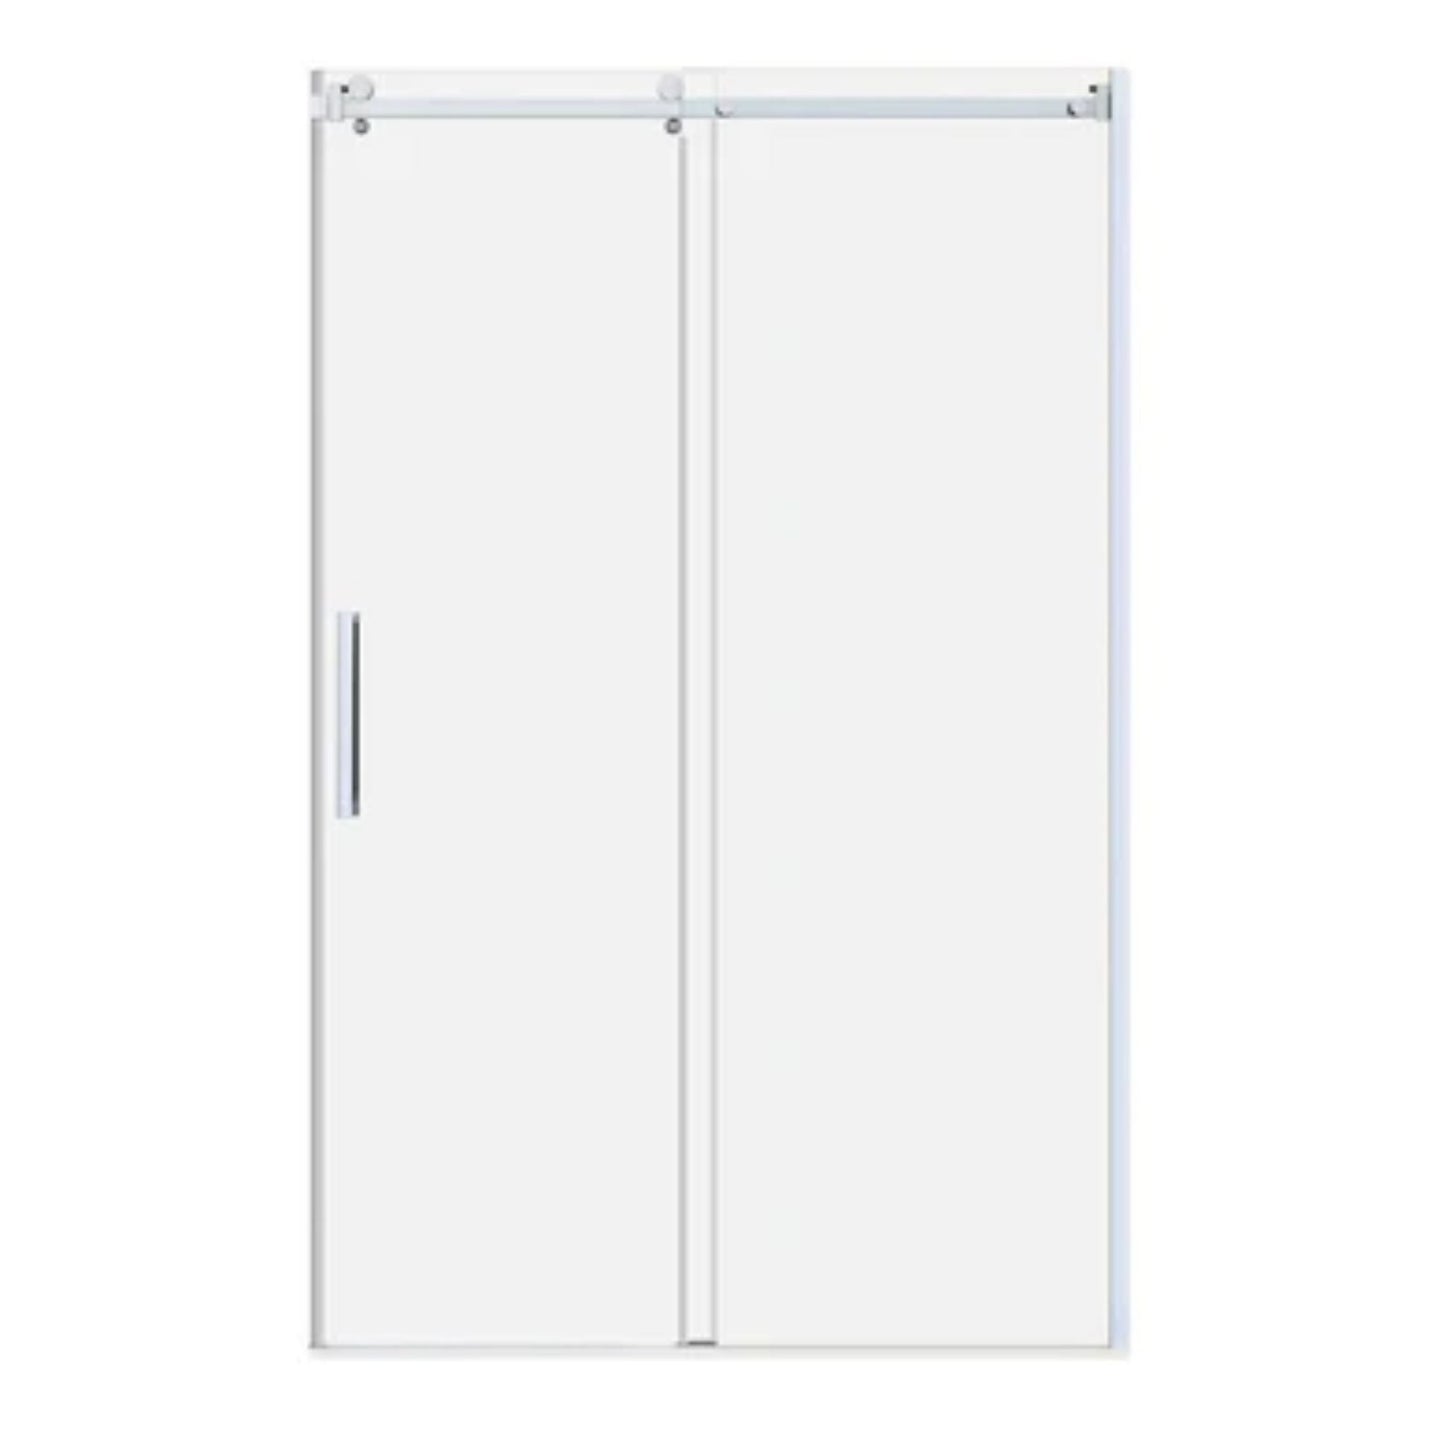 LessCare Ultra-B 44-48" x 76" Chrome Sliding Shower Door